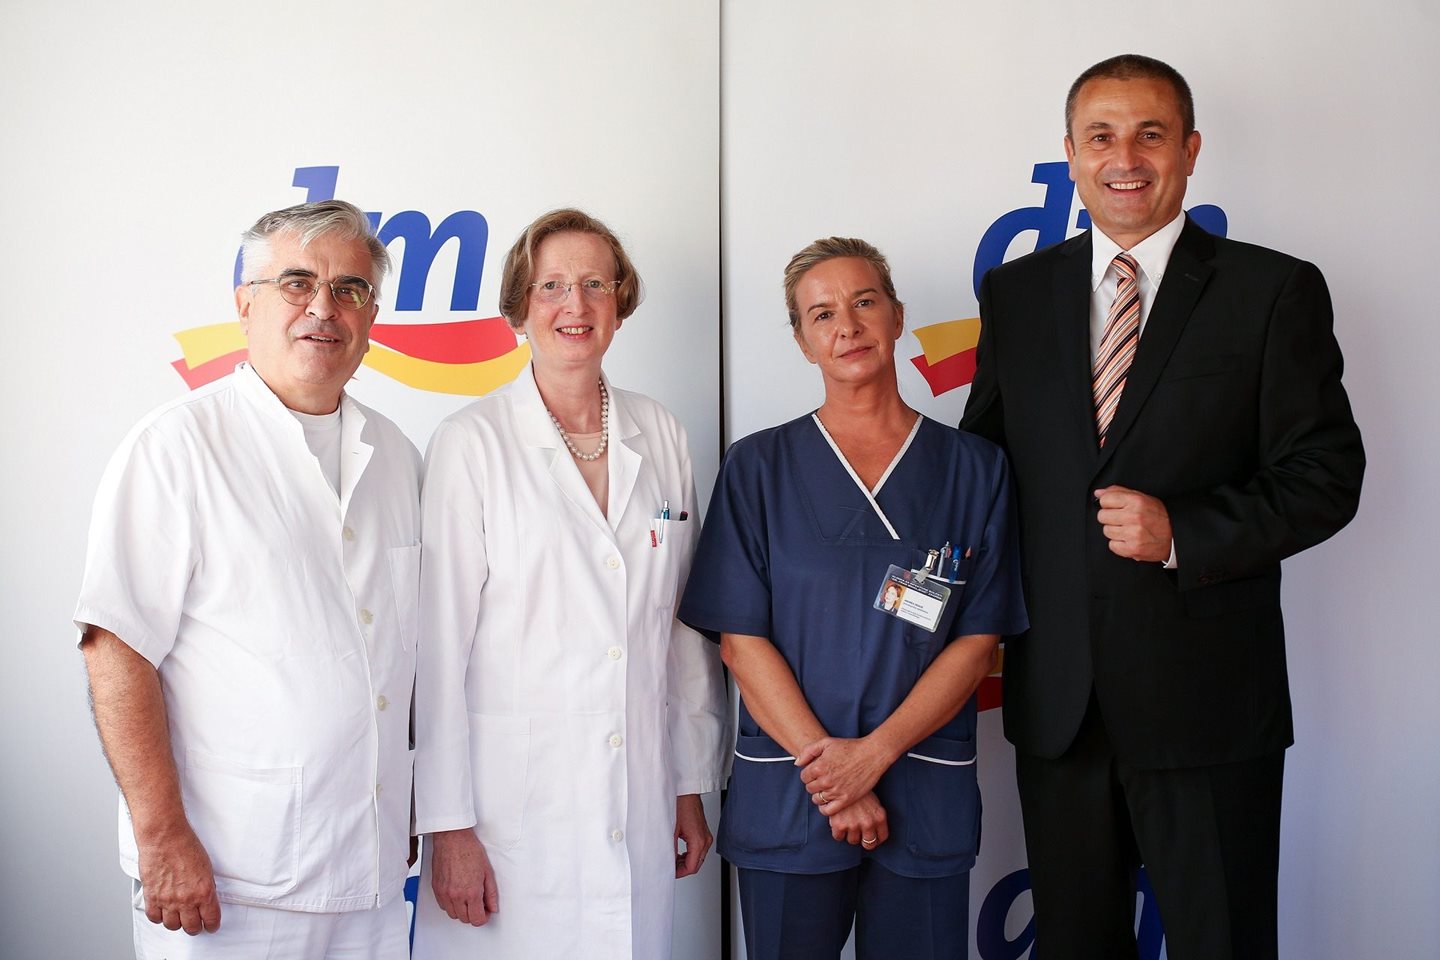 Donacija dm-a Klinici “Dr. Fran Mihaljević” omogućit će sigurnije liječenje najtežih bolesnika